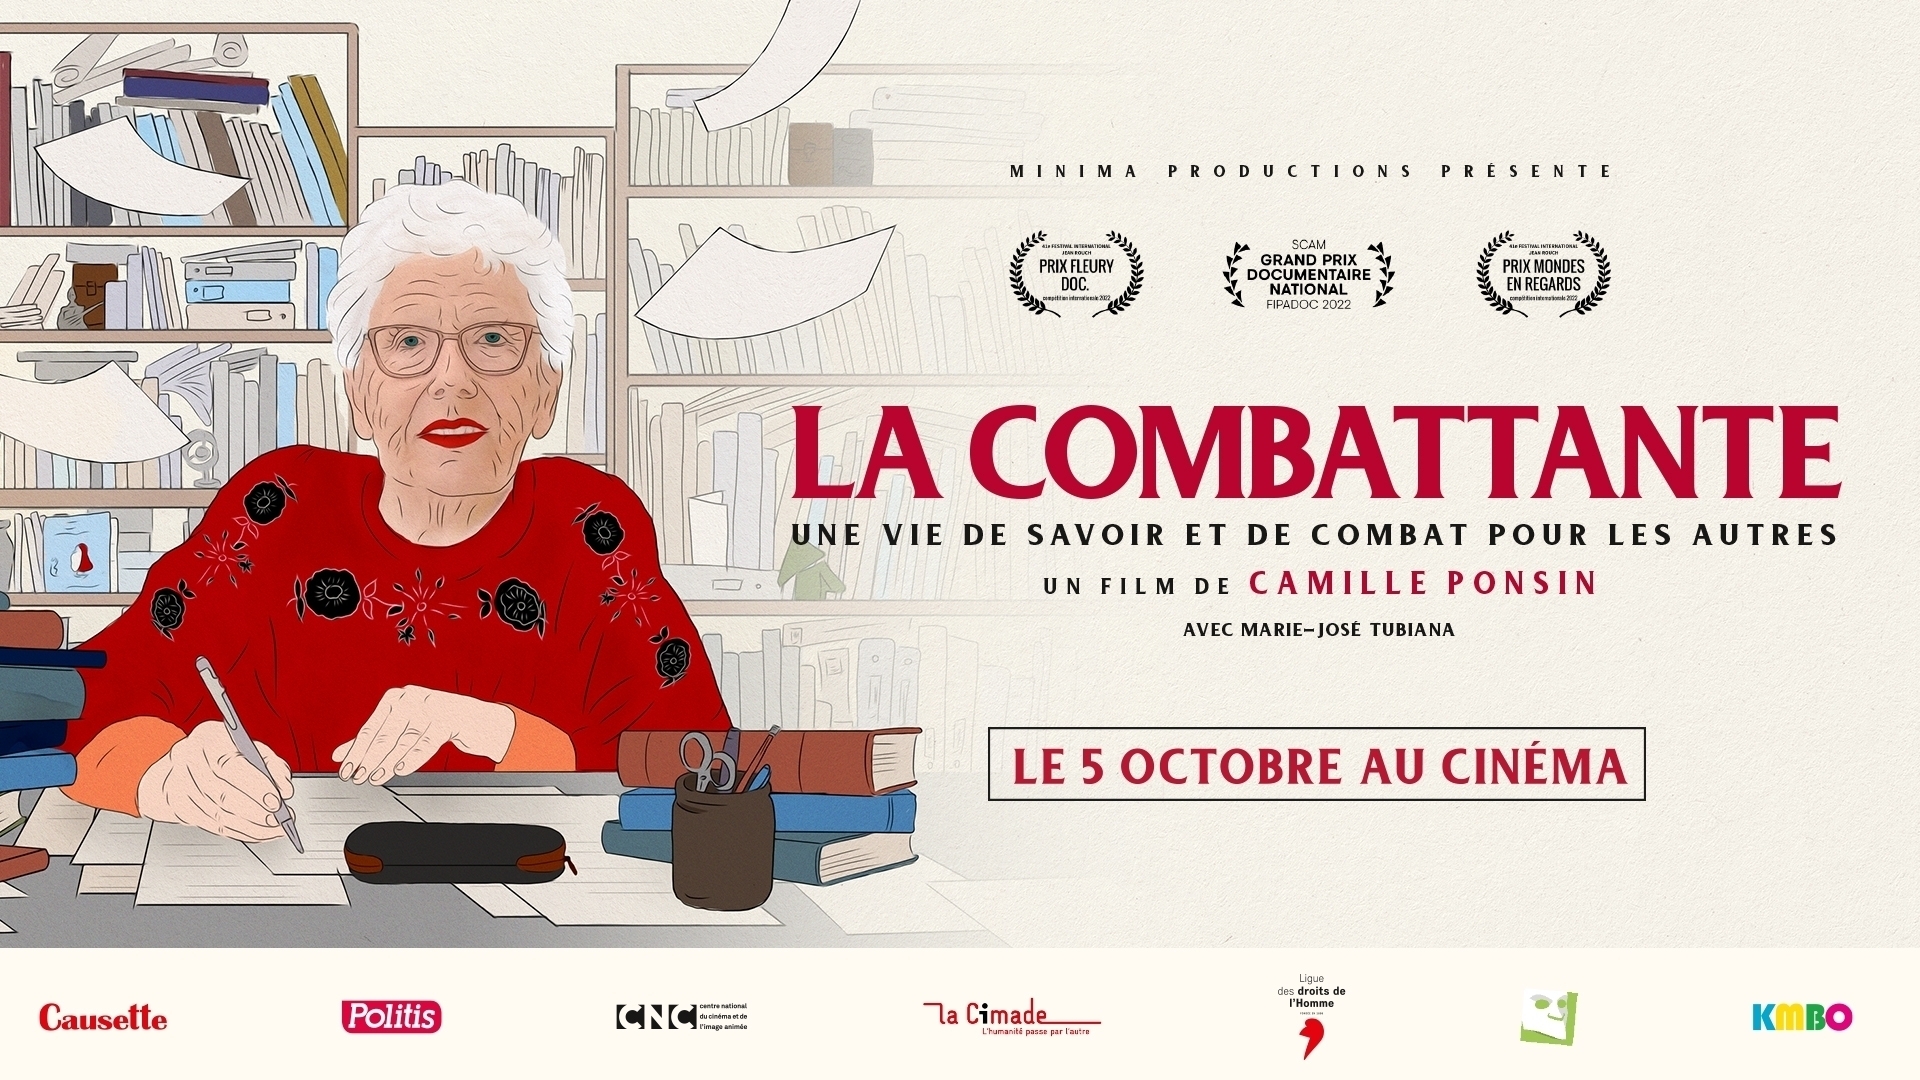 Affiche cinéma du film La Combattante - distribution KMBO - création affiche par l'Agence Les Aliens - Déclinaison paysage